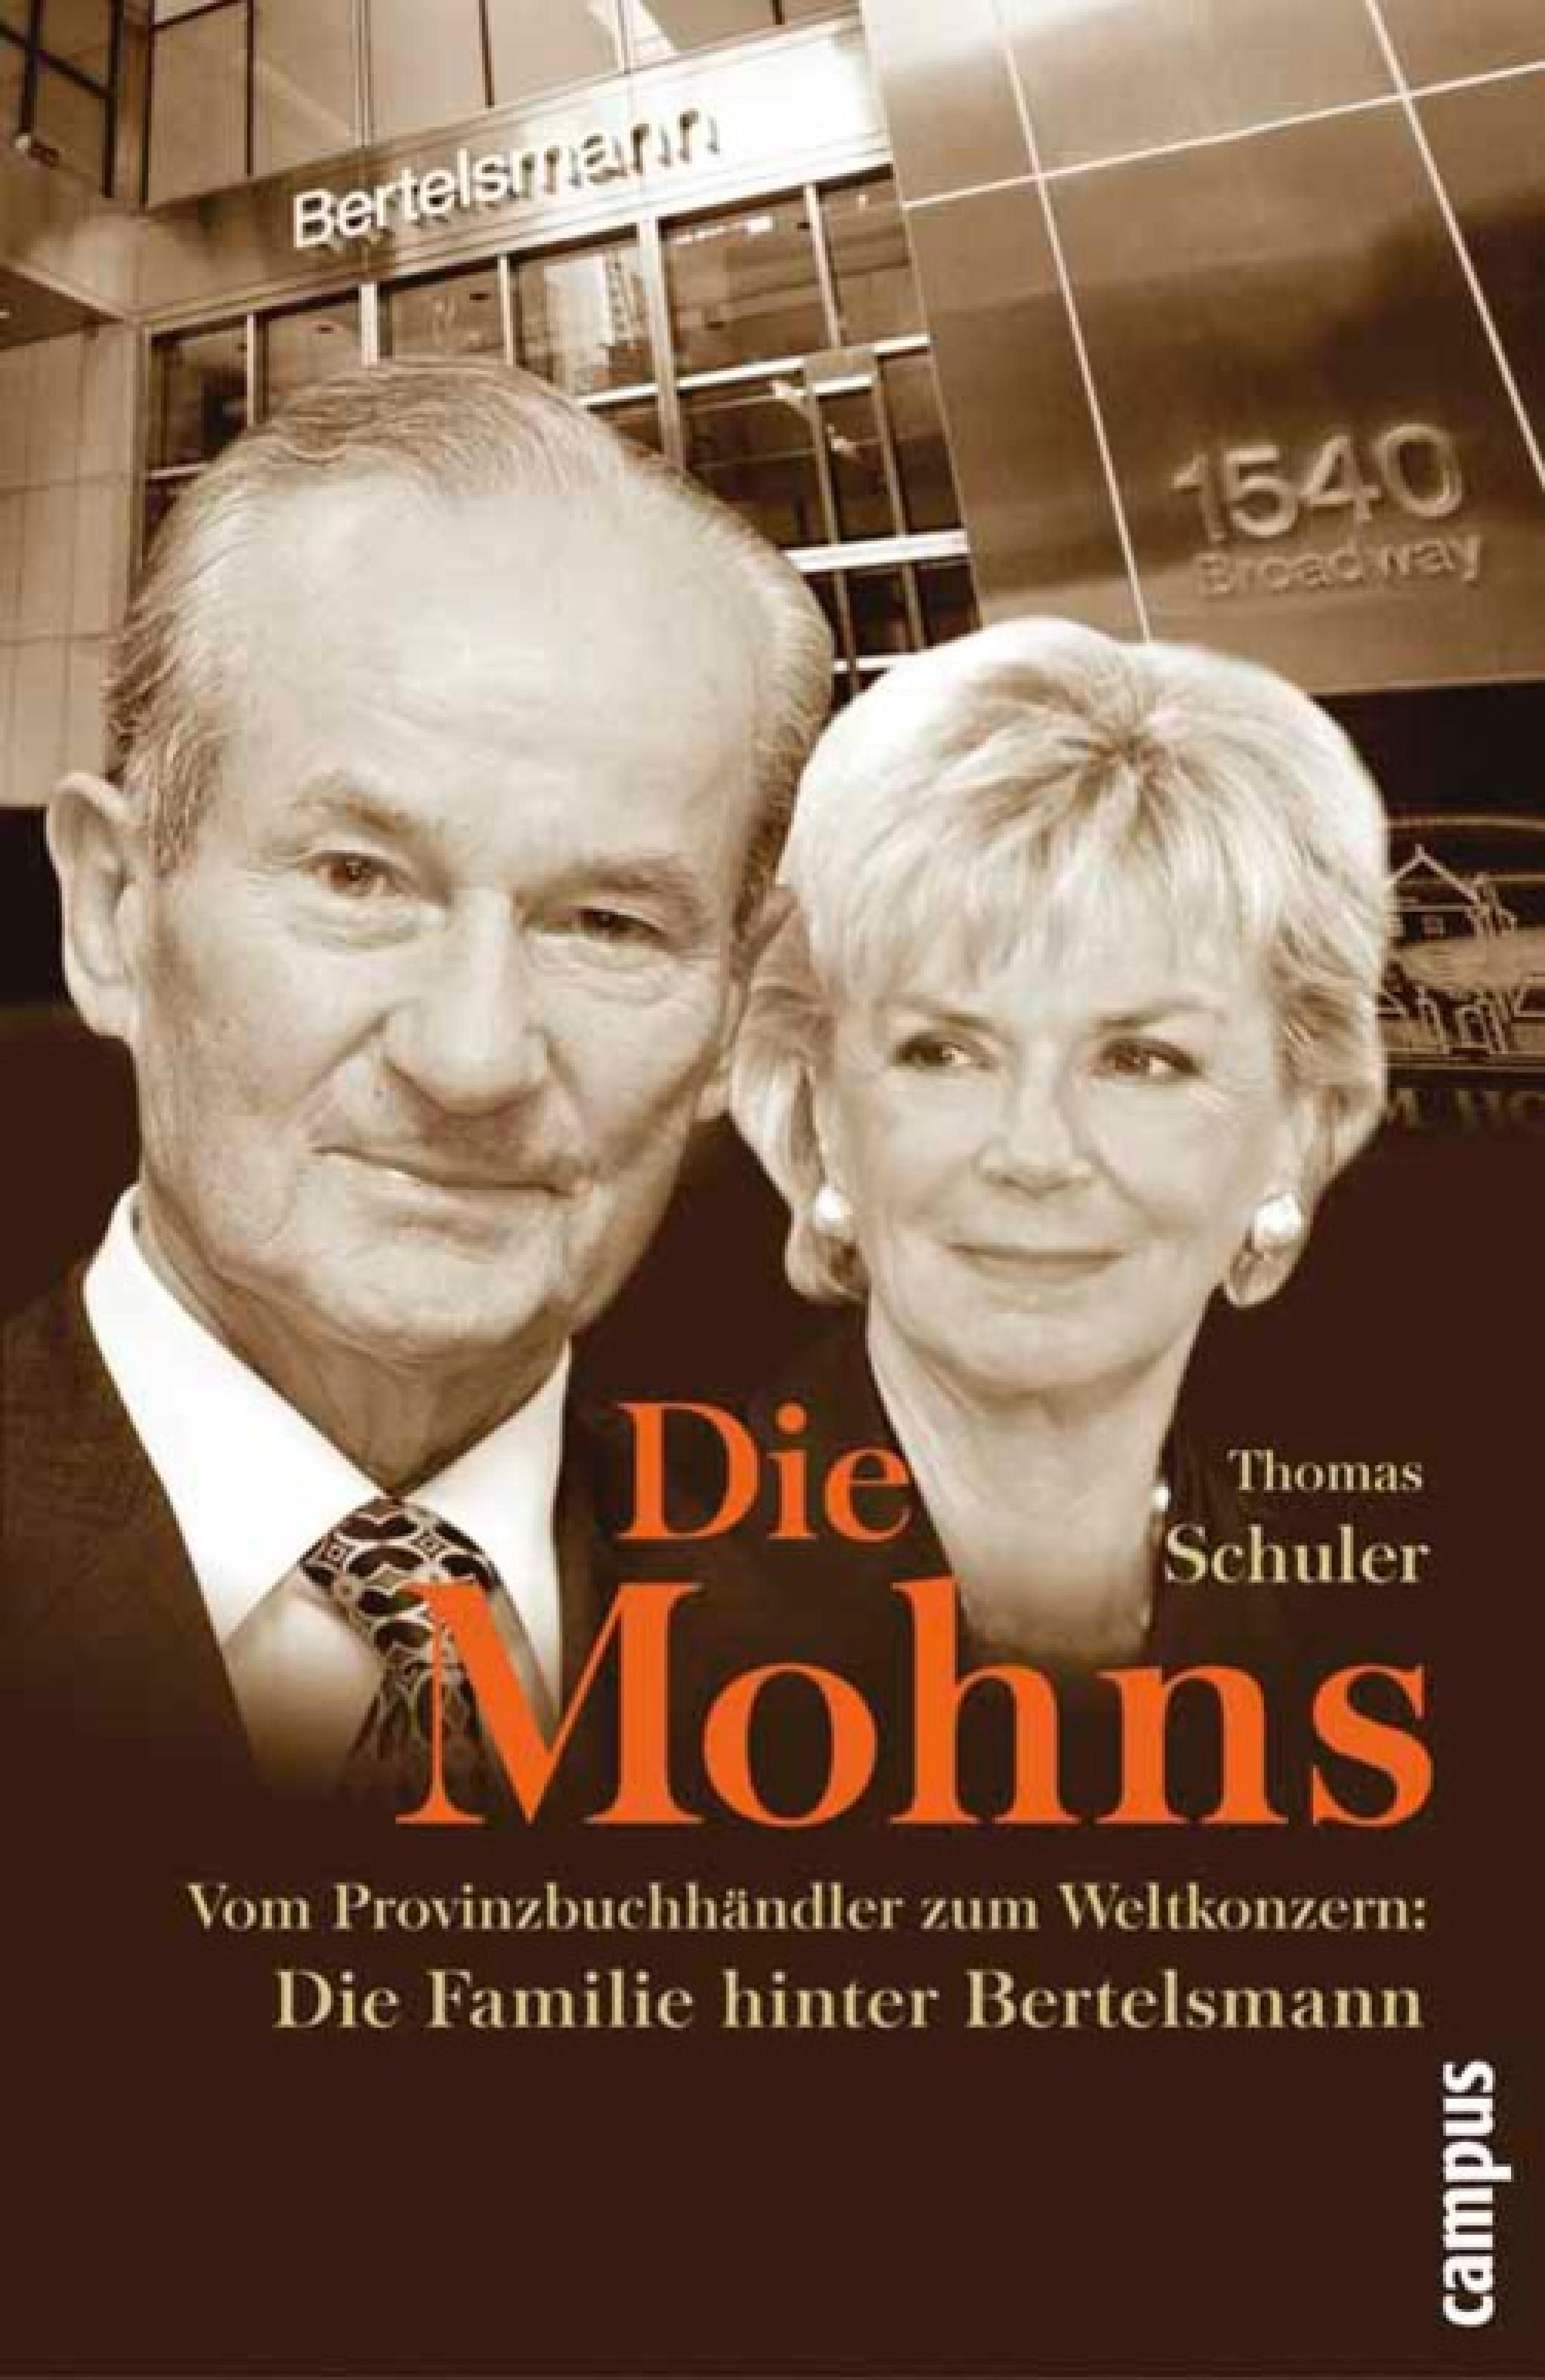 Die Mohns, ein E-Book von Thomas Schuler - Campus Verlag